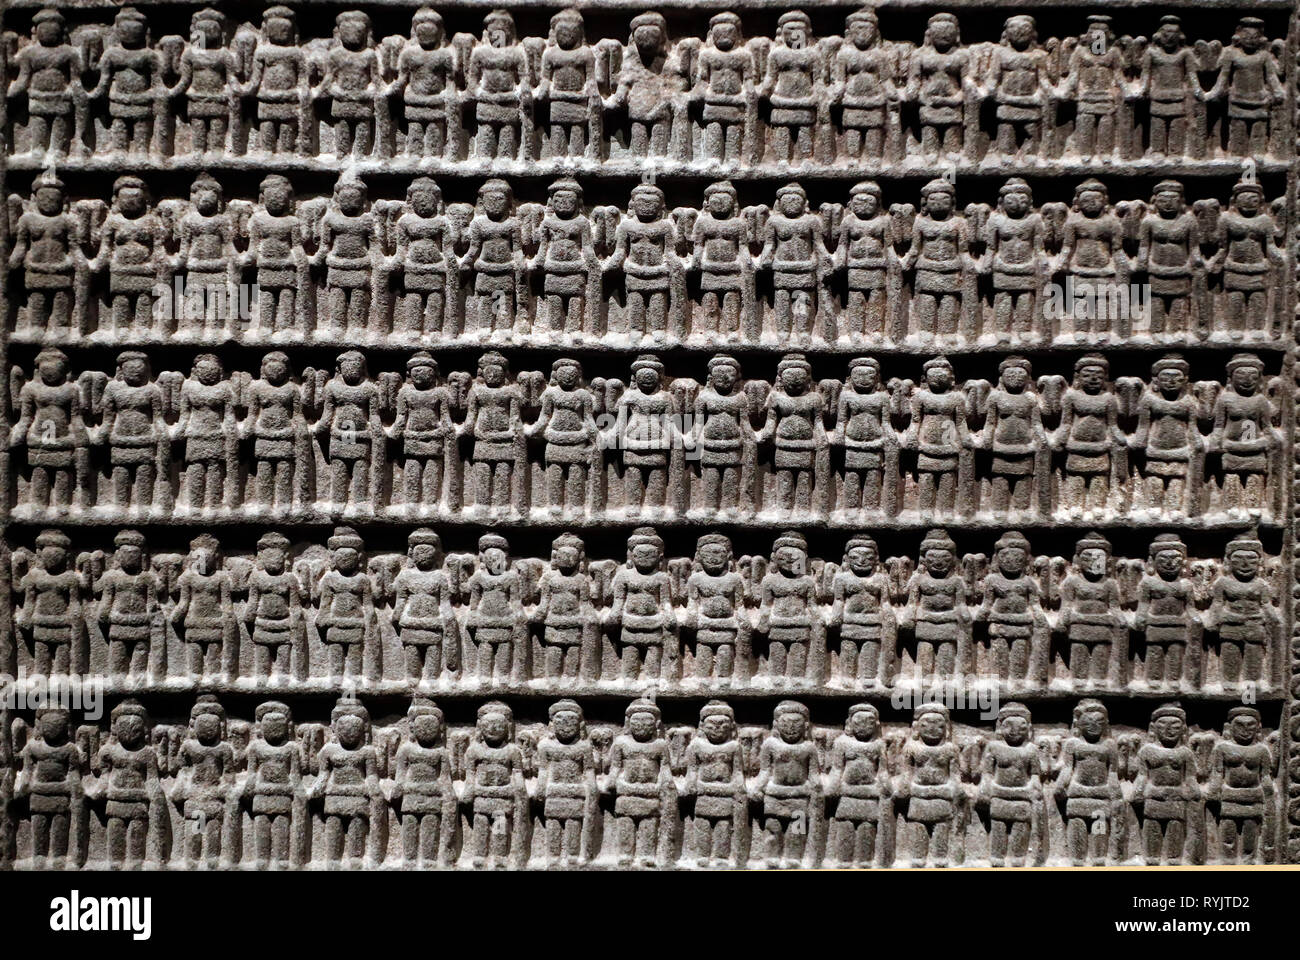 Museo de Civilizaciones Asiáticas. Angkor. Explorar Camboya la ciudad sagrada. Vishnu estela votiva. En cada lado 255 pequeñas imágenes de las cuatro armados de Vishnu. Ca Foto de stock